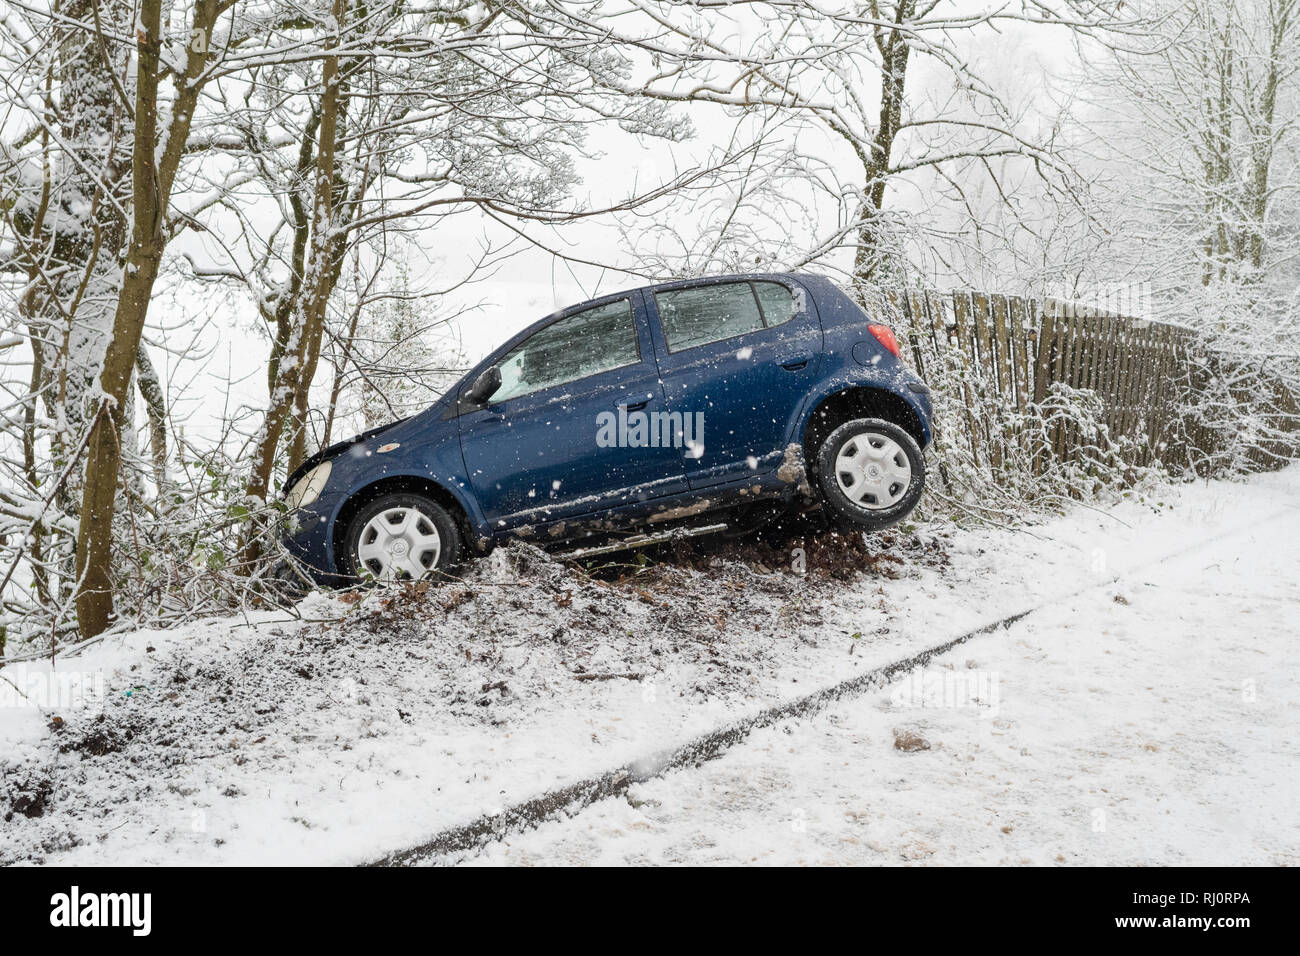 Accident de voiture dans la neige. Véhicule s'est retrouvé hors de la route dans la neige en hiver - Callander, Ecosse, UK (le consentement donné par le pilote indemne de voiture) Banque D'Images